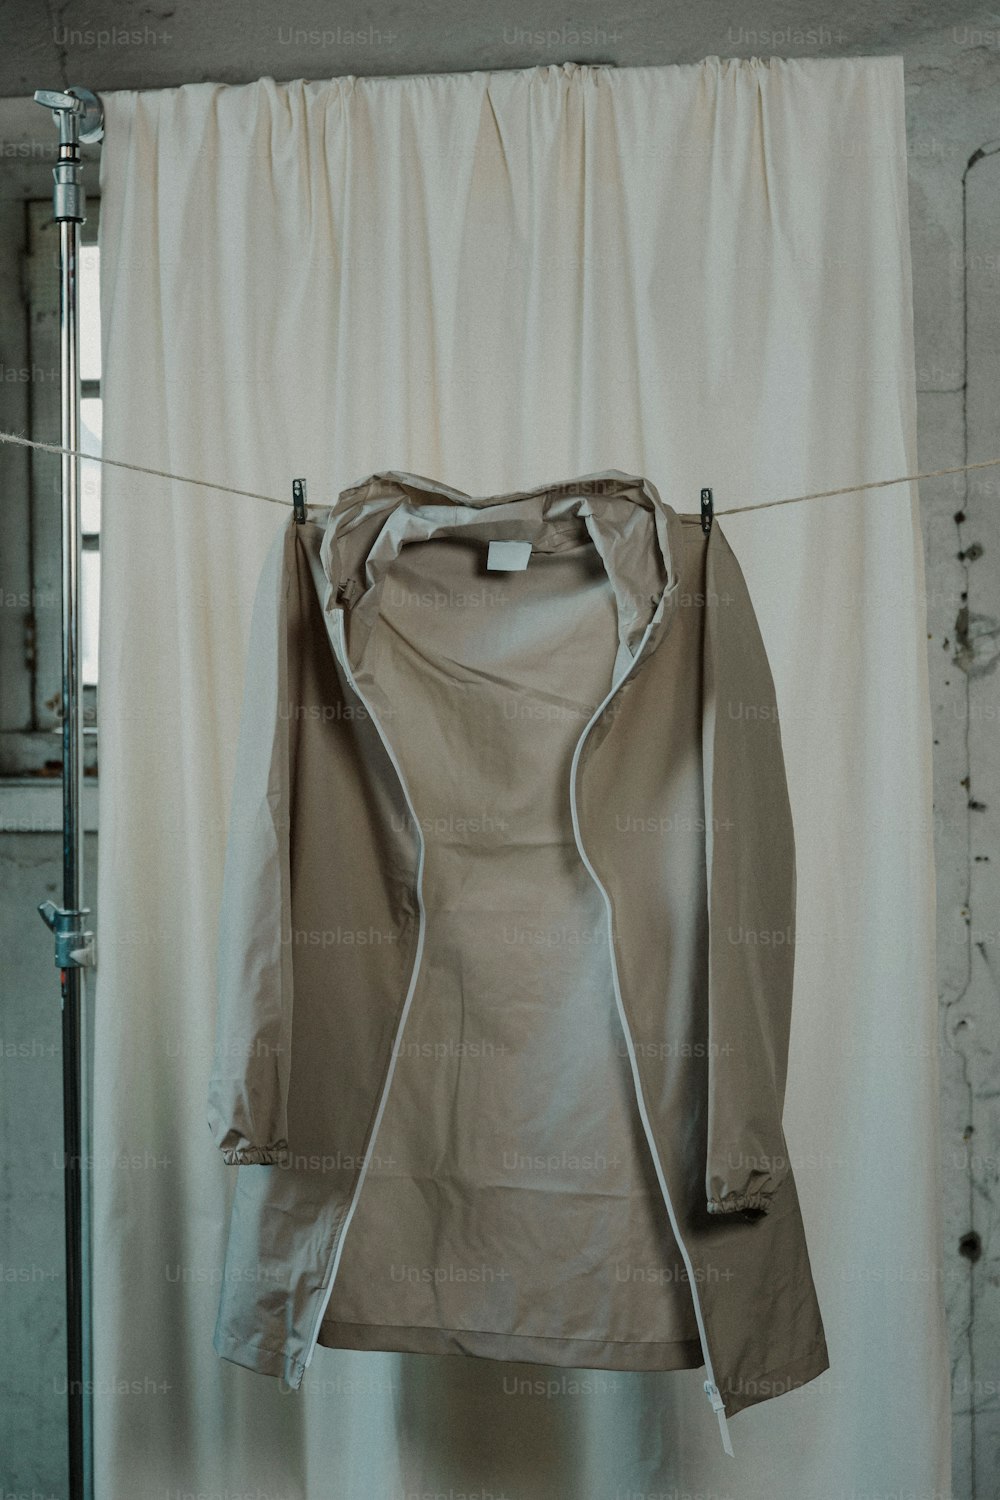 une veste accrochée à une corde à linge devant un rideau